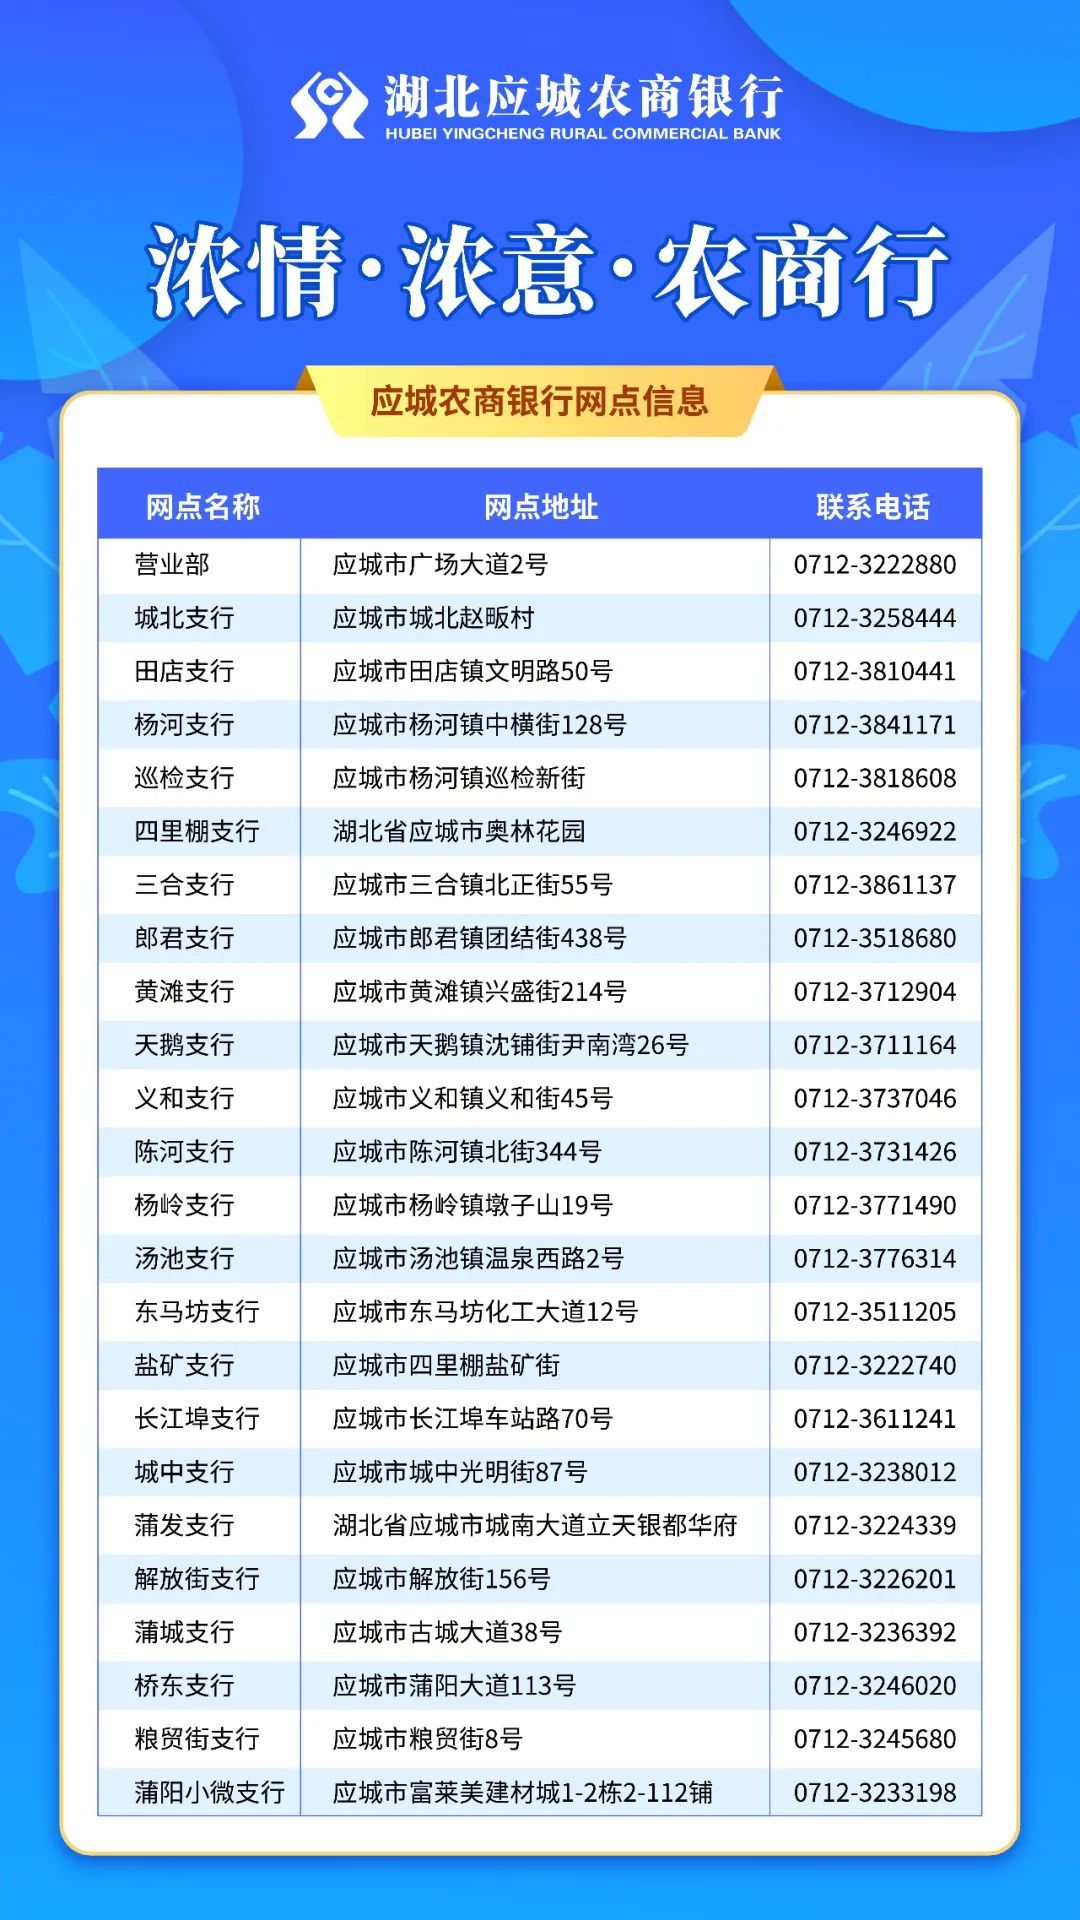 2021年11月08日湖北应城农村商业银行股份有限公司客服电话